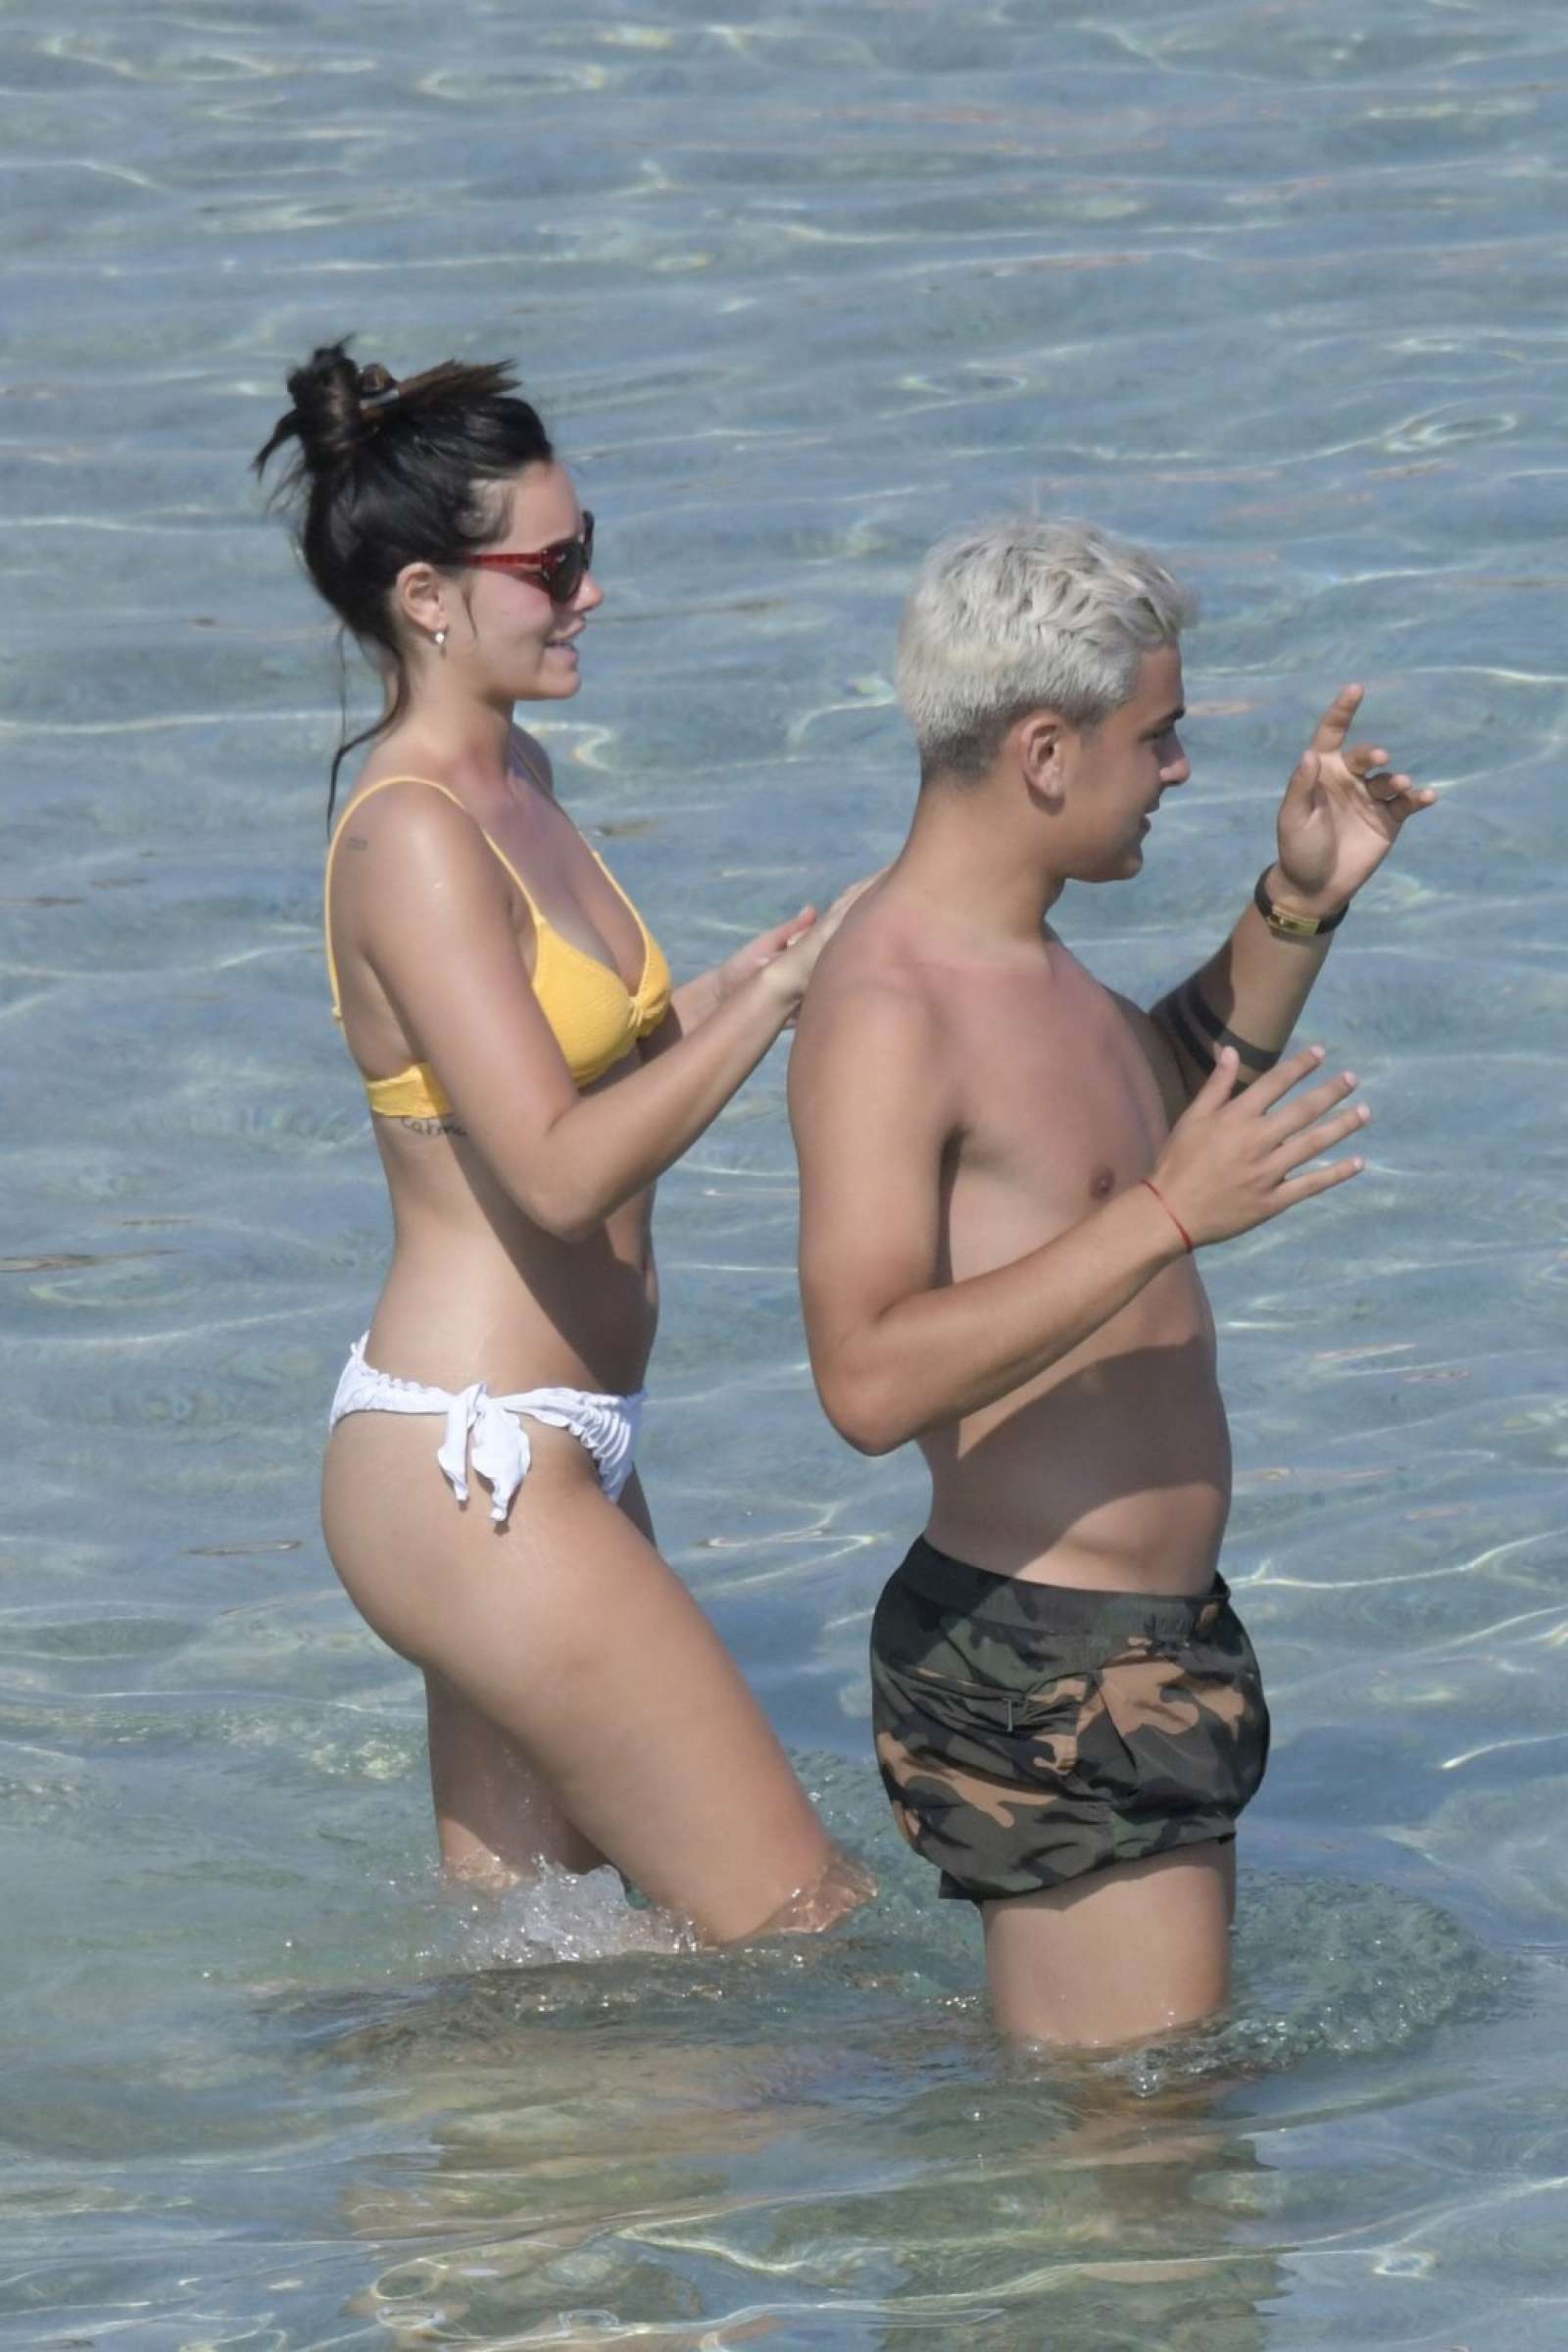 Oriana Sabatini in Bikini at the beach in Mykonos July 28, 2018 42